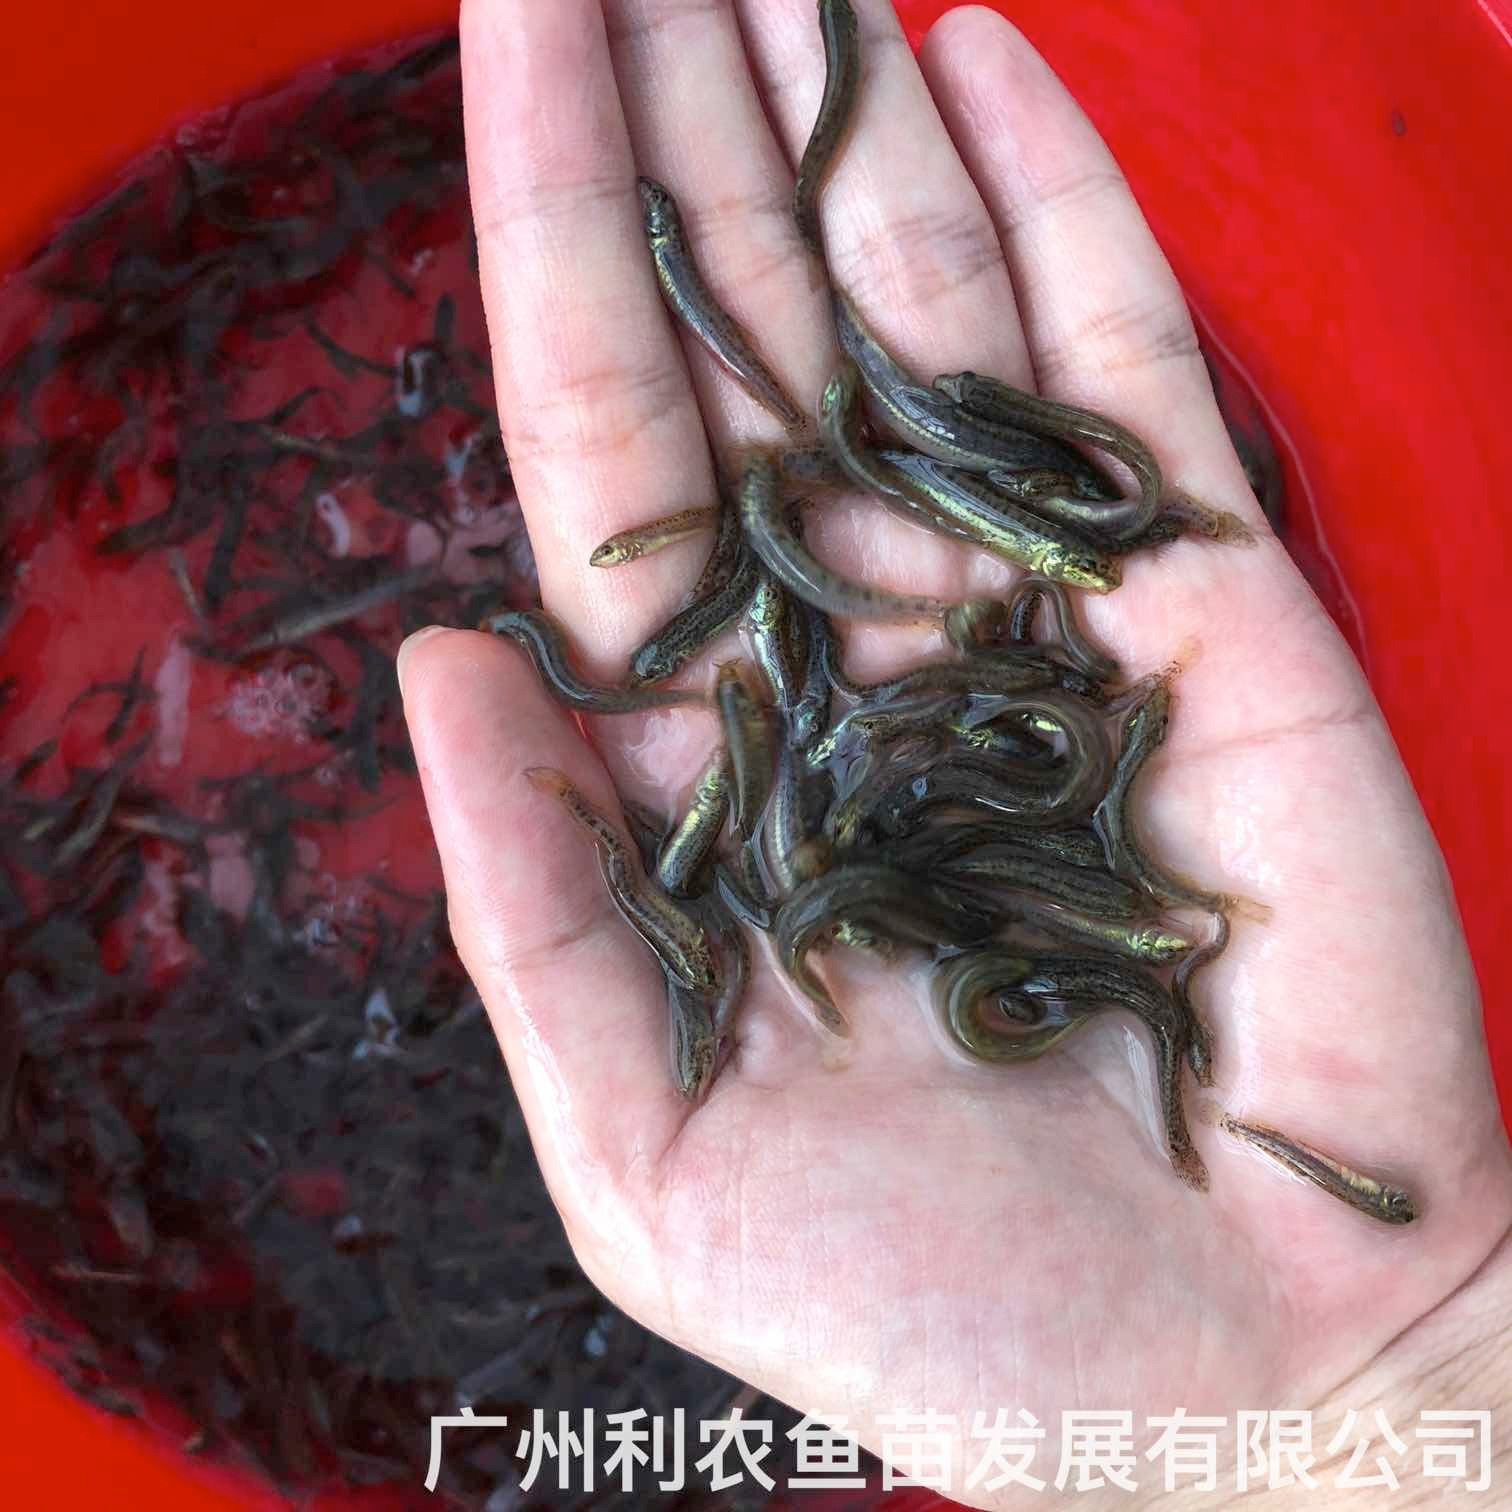 广西钦州台湾泥鳅苗出售出售广西来宾泥鳅鱼苗批发养殖基地